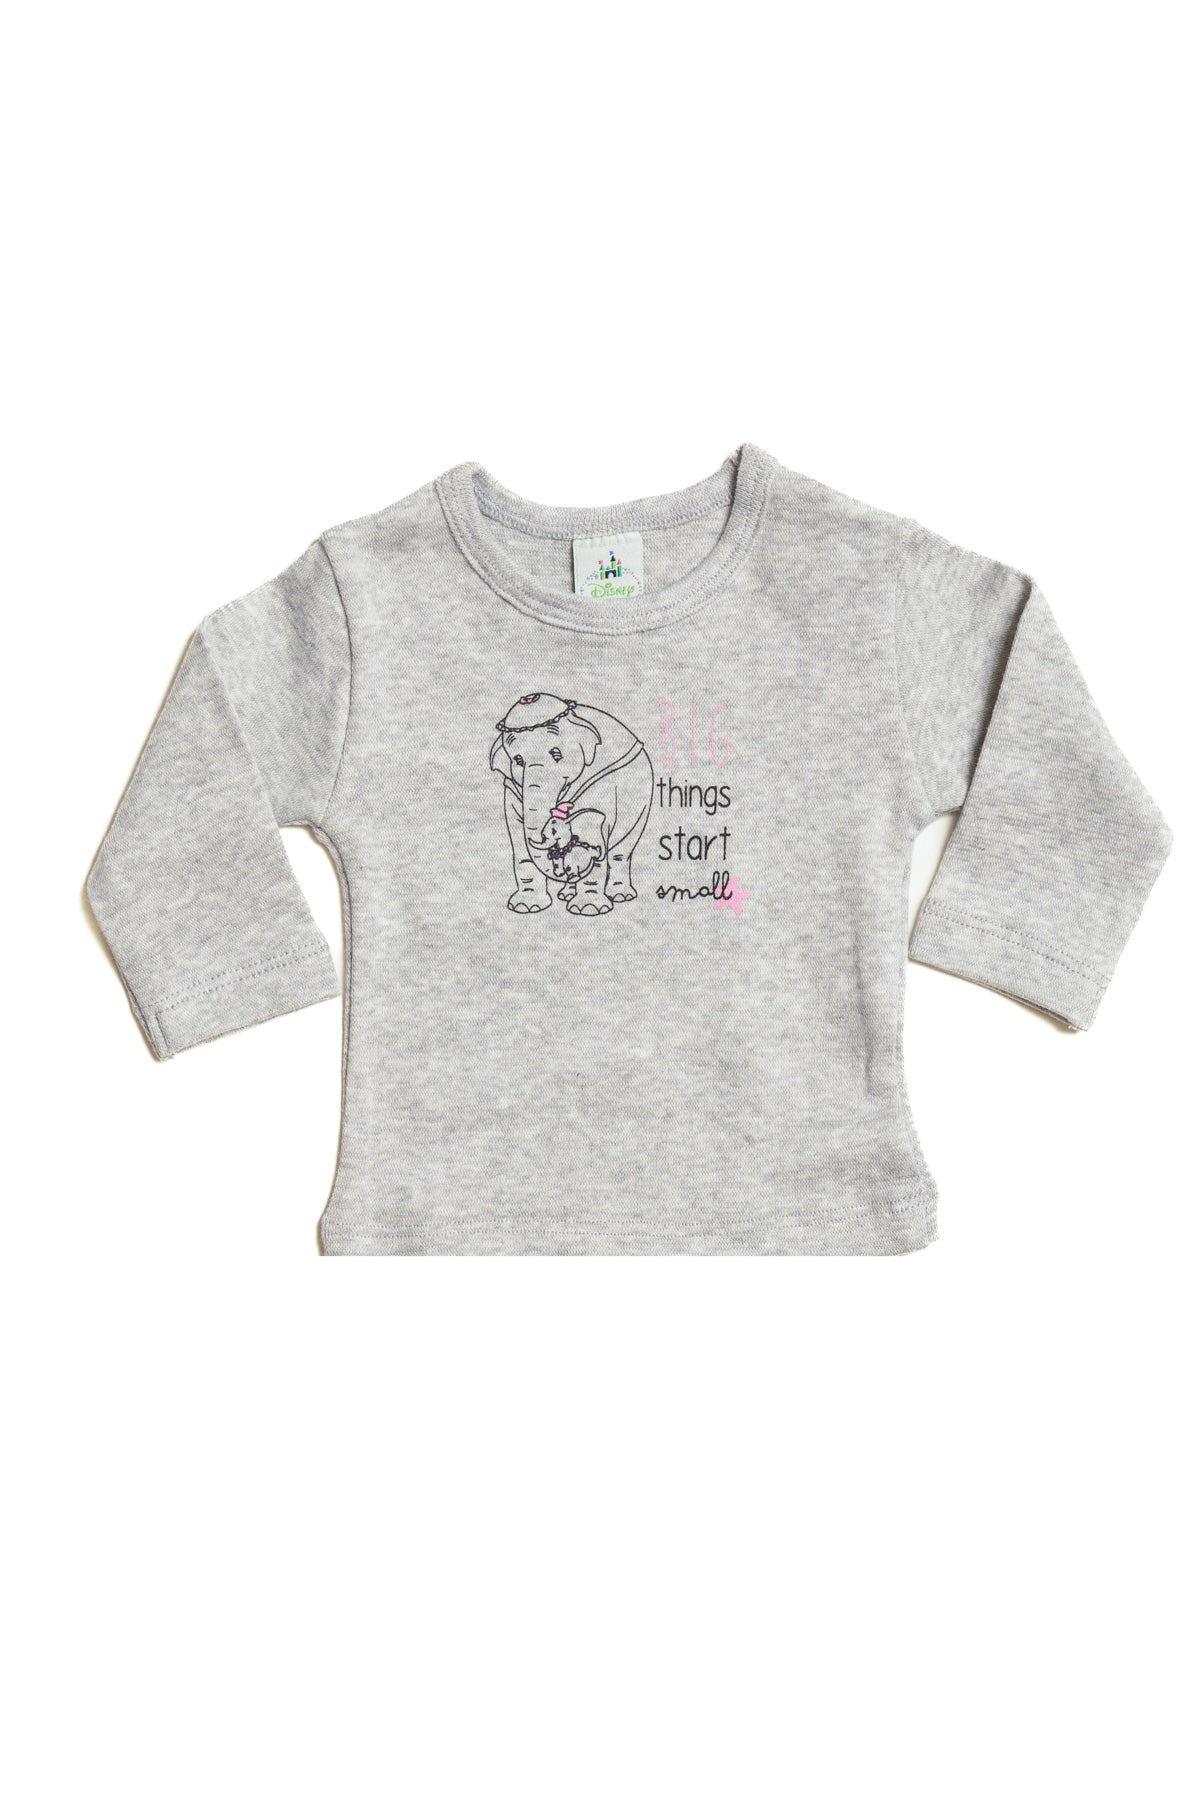 T-Shirt Baby Dumbo " Big"  sleeve 4906